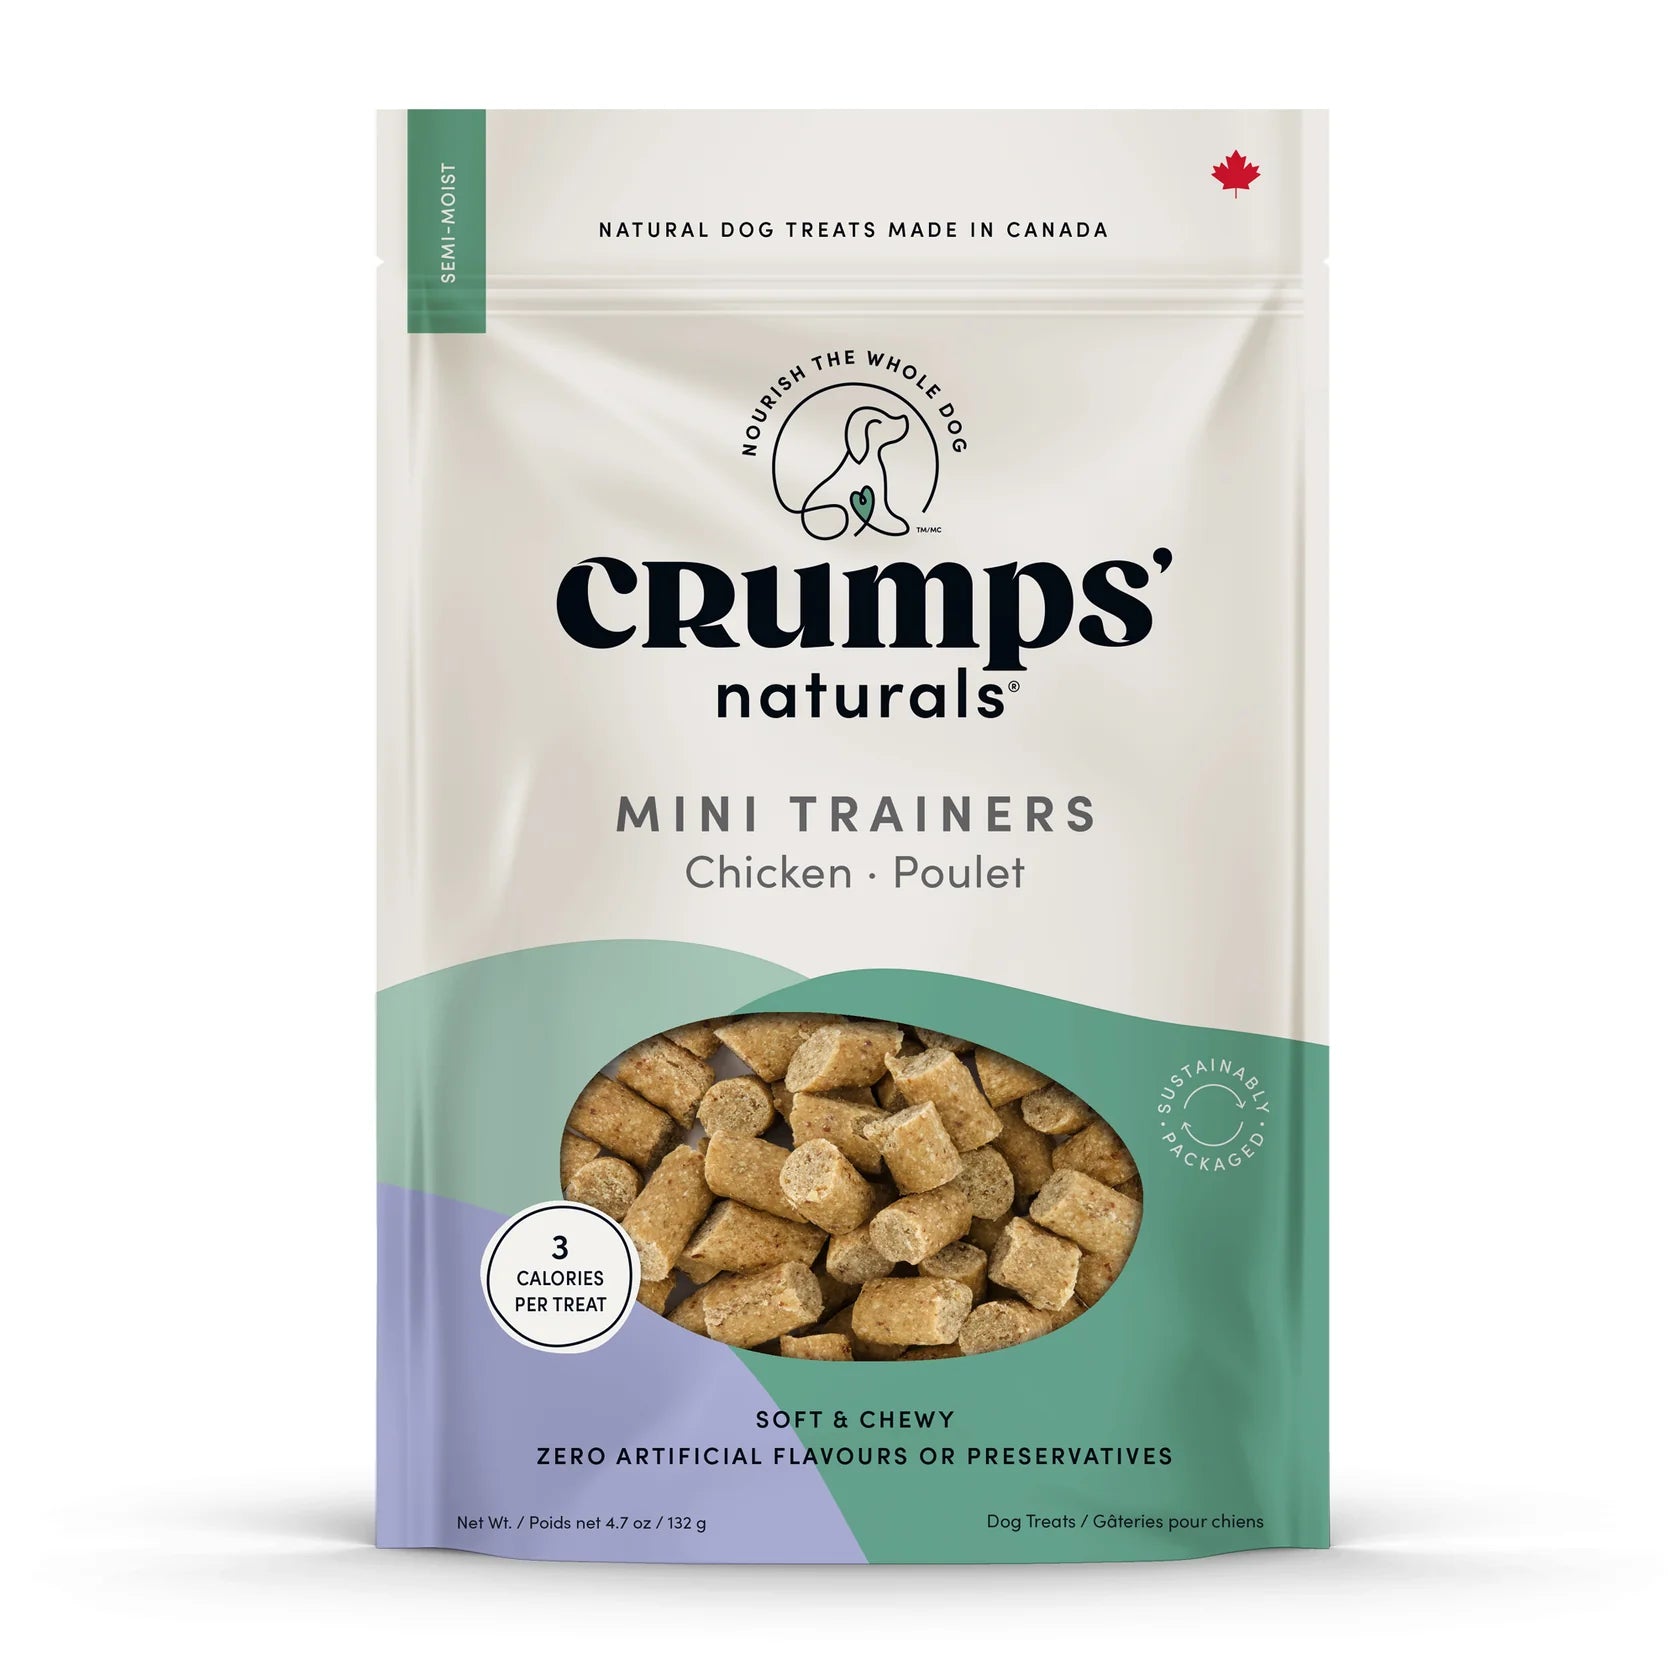 Crumps' Naturals - Mini Trainers Semi Moist Chicken Treat